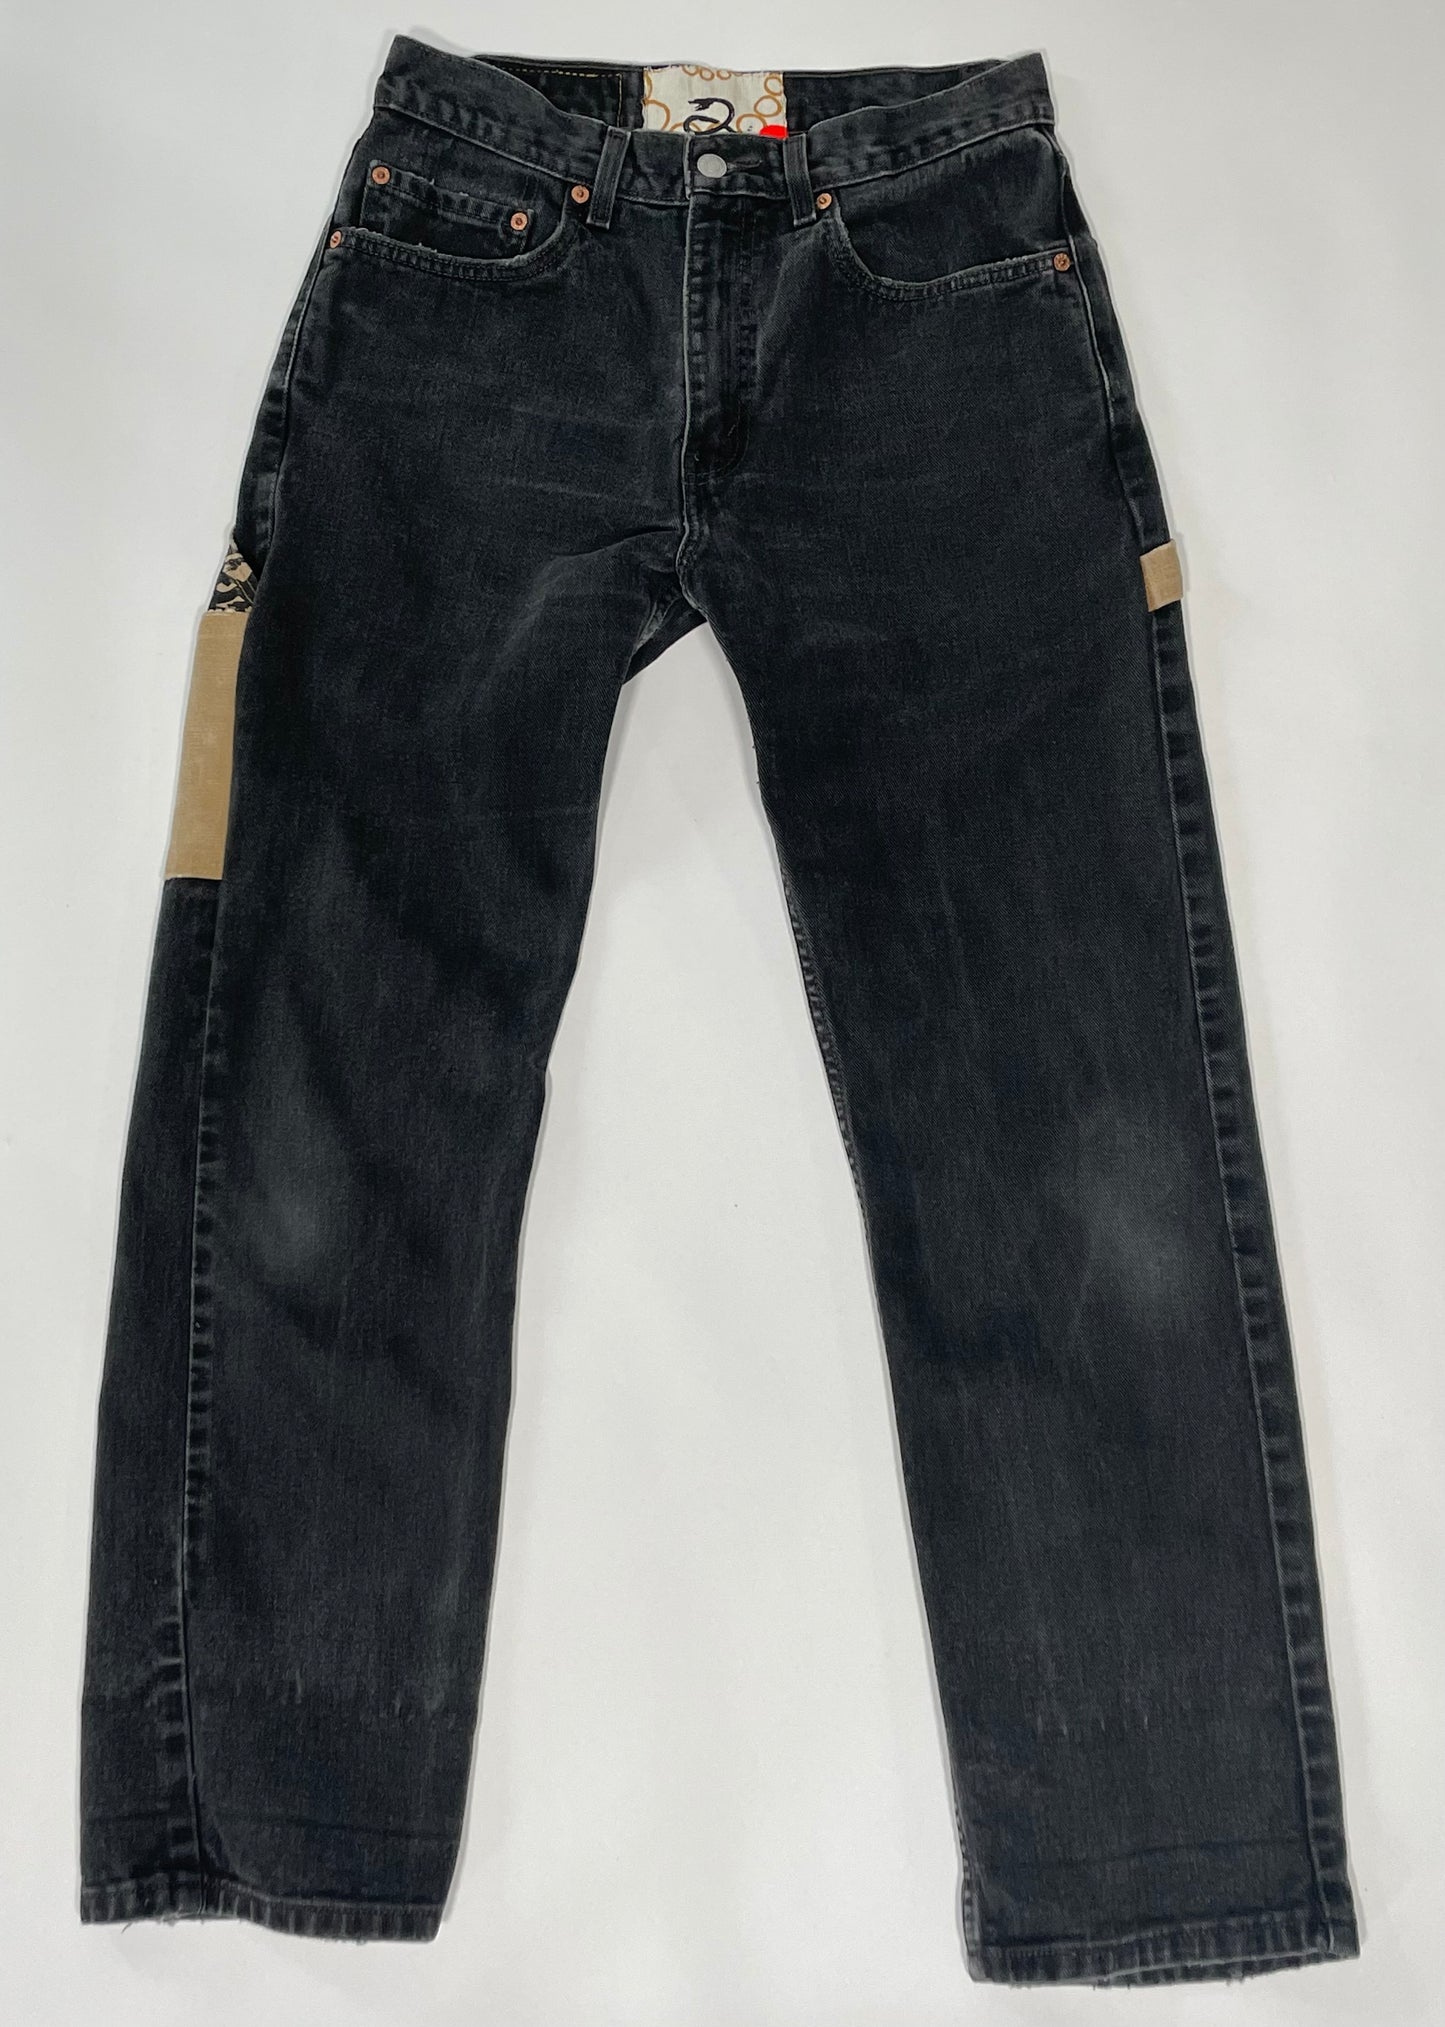 1980's 100% Cotton Black Levi's 505 Jean